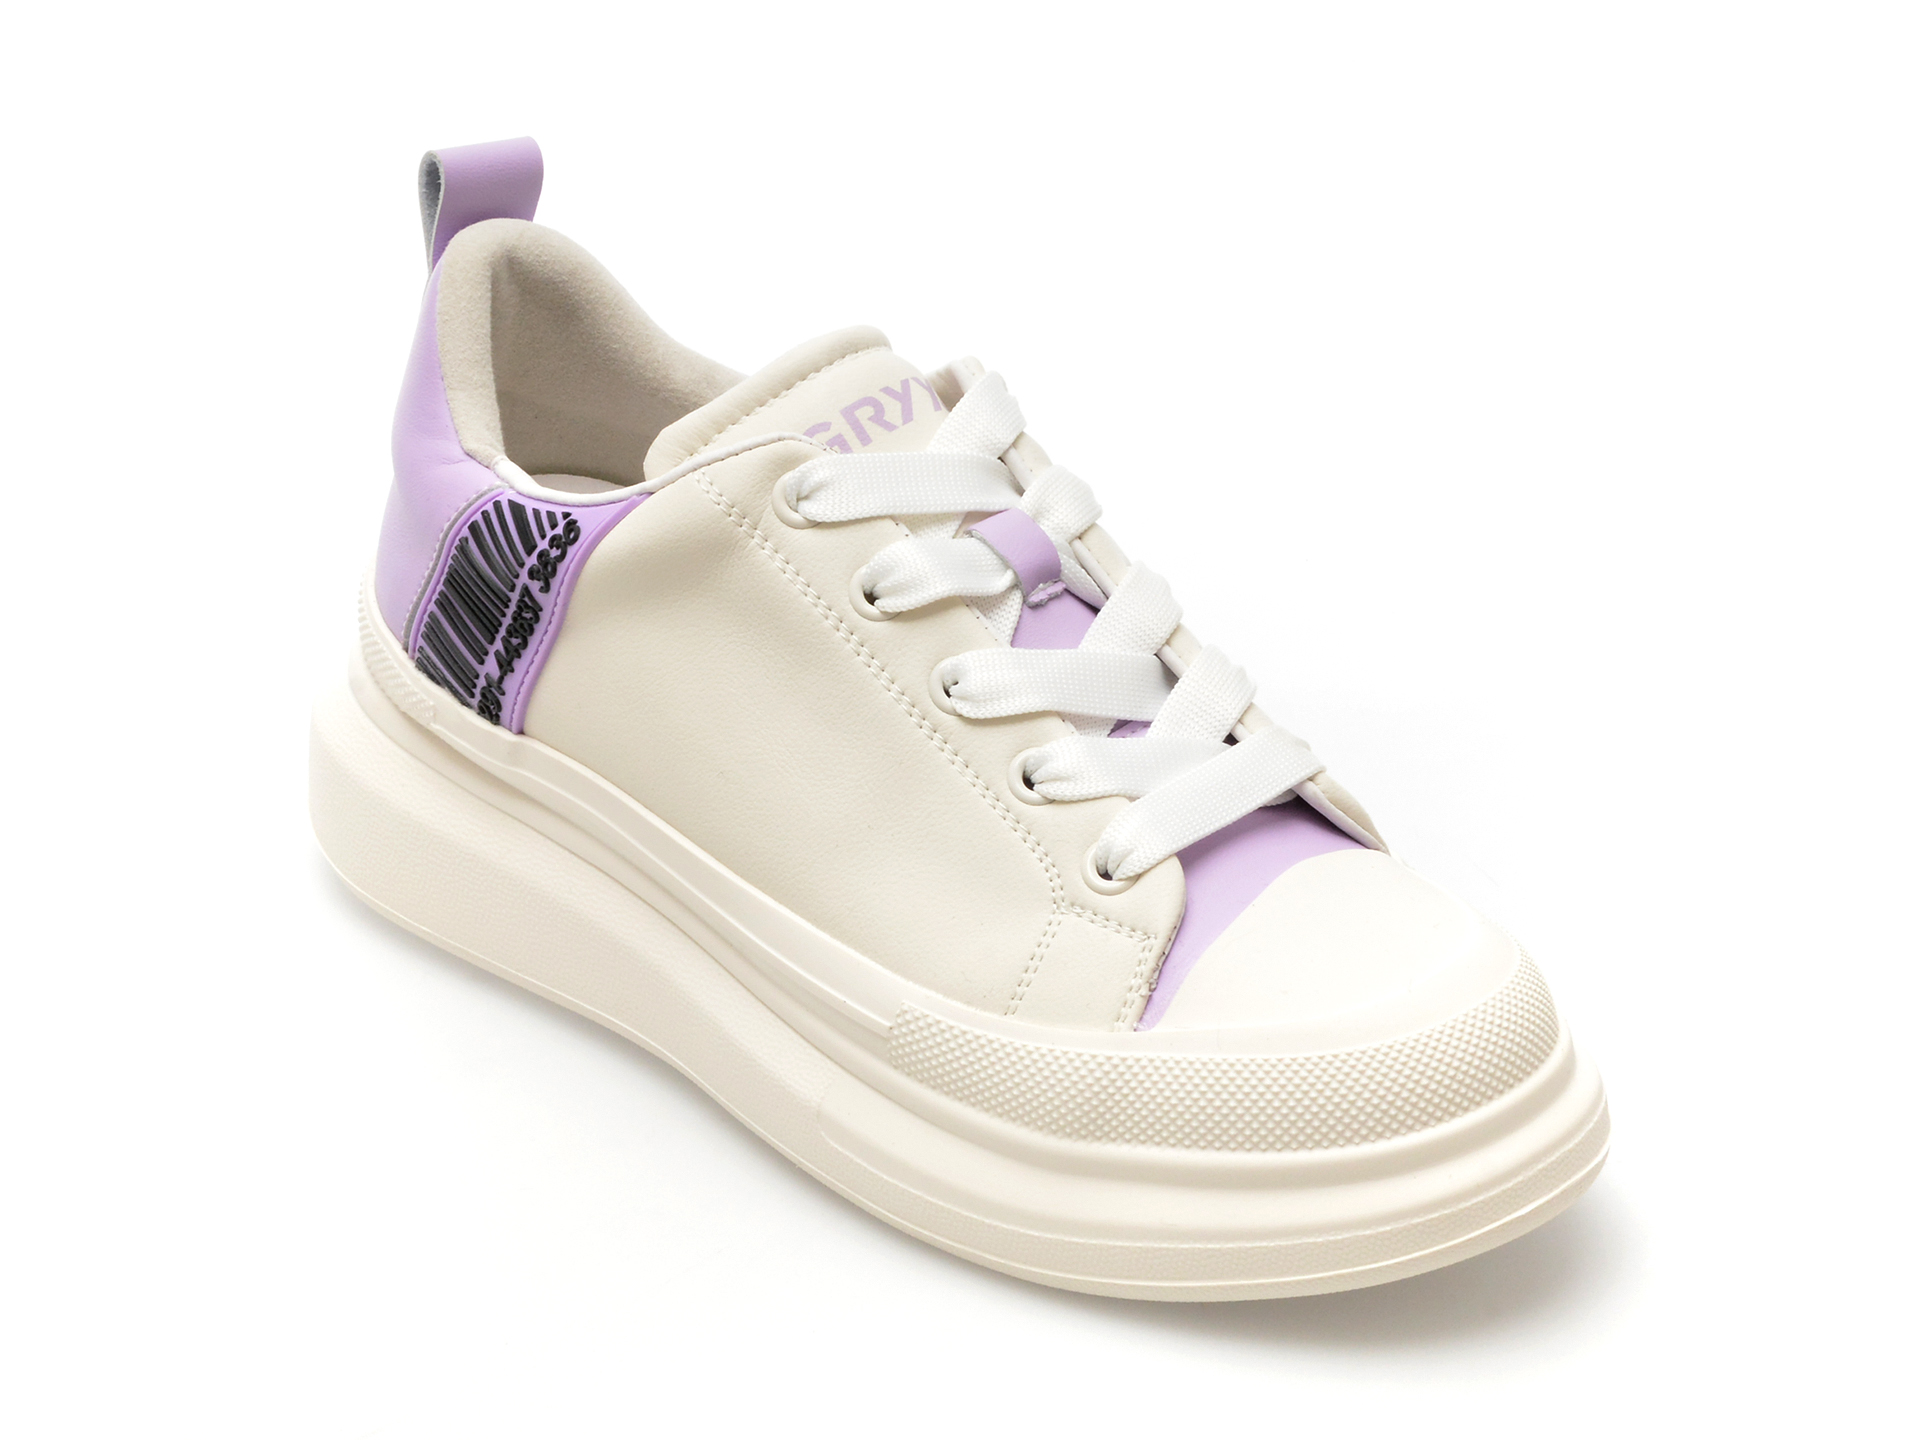 Pantofi GRYXX albi, 2301, din piele naturala